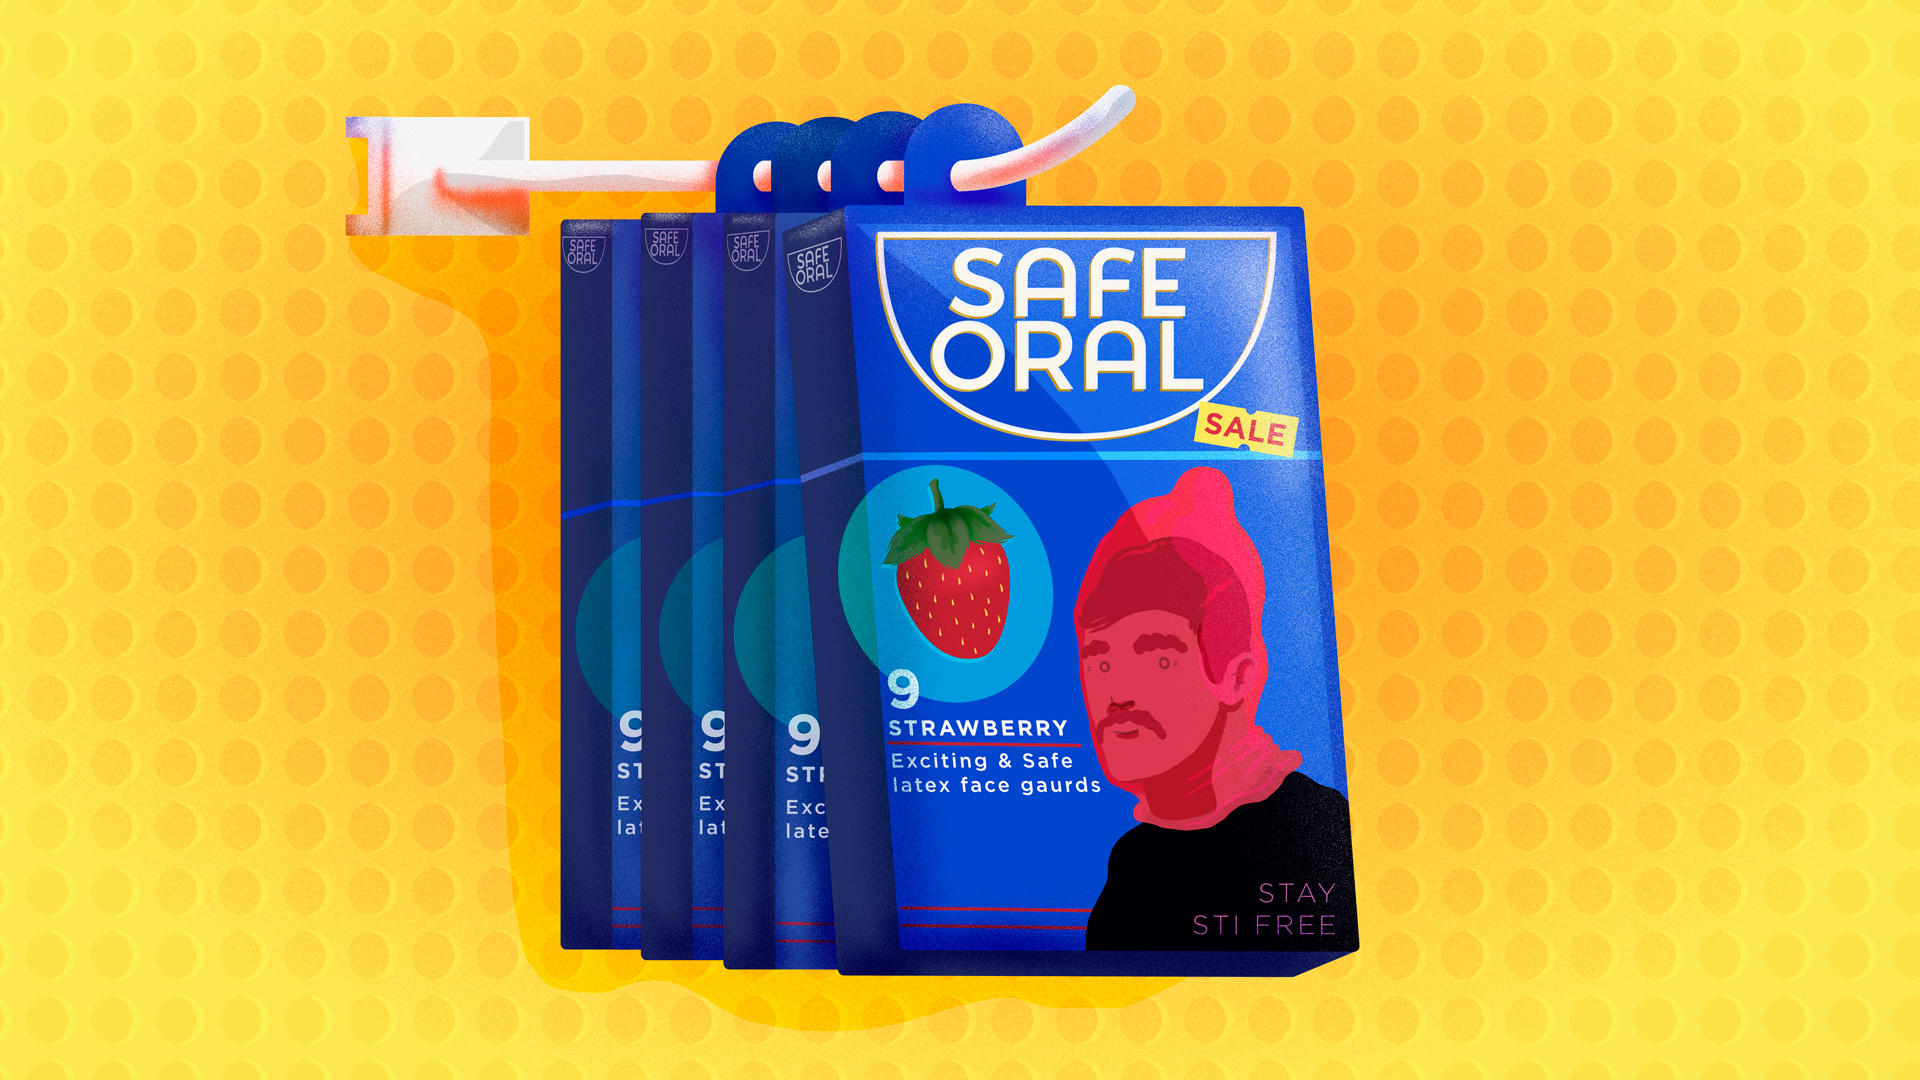 safe unsafe or oral sex is